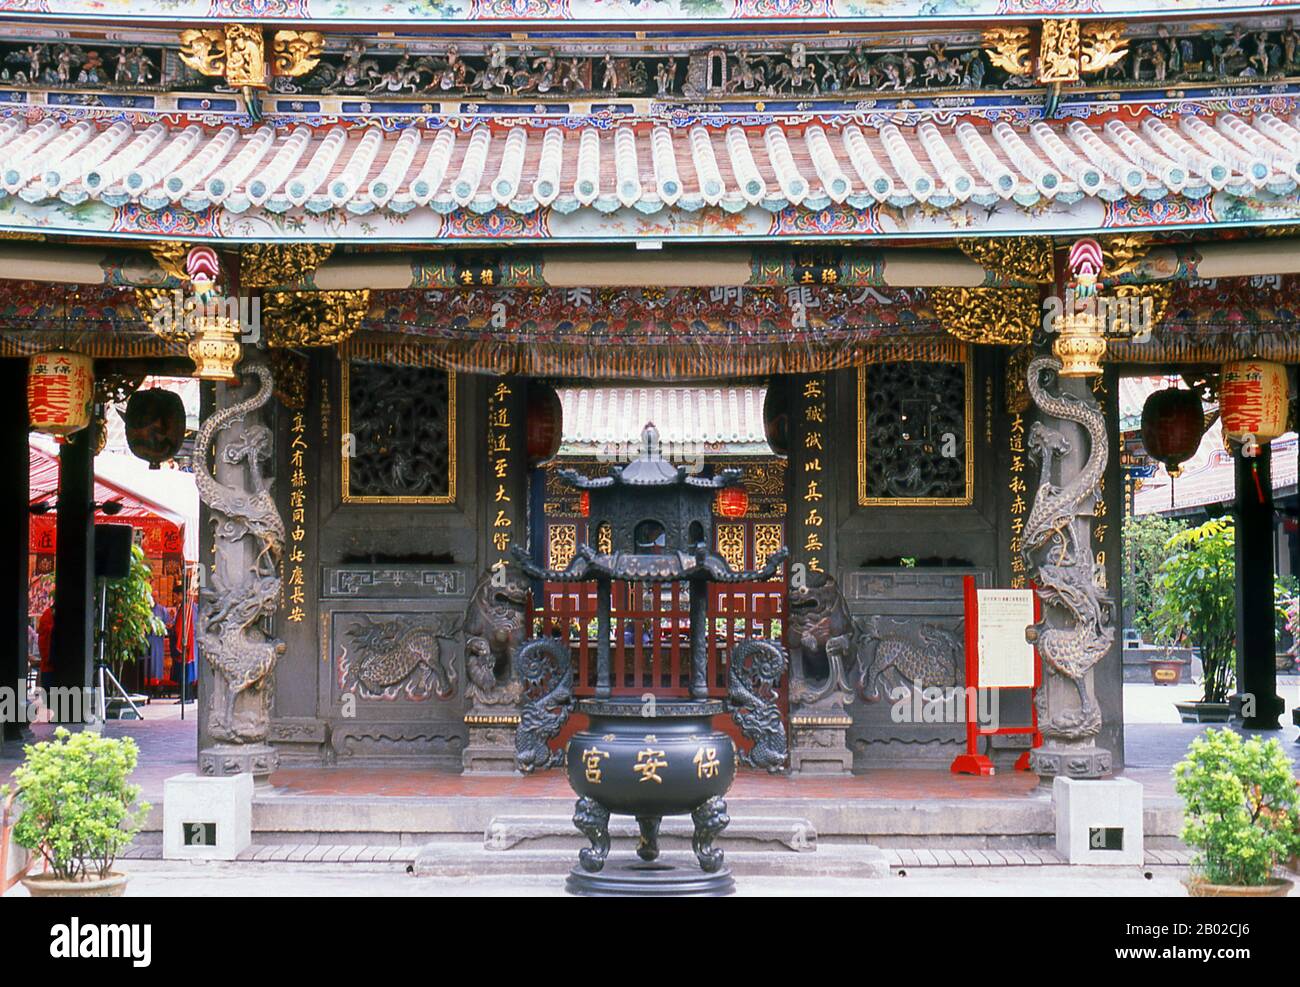 Der Dalongdong Baoan-Tempel (Chinesisch: 大龍峒保安宮; Pe̍h-ōe-jī: Tōa-lông-pōng pó an-Kiong), auch Taipeh Baoan-Tempel (Chinesisch: 臺北保安宮) ist ein taiwanischer Folk-Religion-Tempel, der im Taiwanesen im Bezirk Datong in Taipeh, Taiwan, erbaut wurde. Der heutige Tempel wurde ursprünglich von Clanmitgliedern im Tong'an District (同安) erbaut, die Anfang des 19. Jahrhunderts nach Taipeh einwanderten und dem Tempel den Namen Bao'an (保安) gaben, um "die von Tong'an" (保佑同安) zu schützen. Der Tempelbau begann im Jahr 1804 und ersetzte einen zuvor vorhandenen Holzschrein aus dem Jahr 1742 in Dalongdong. Stockfoto